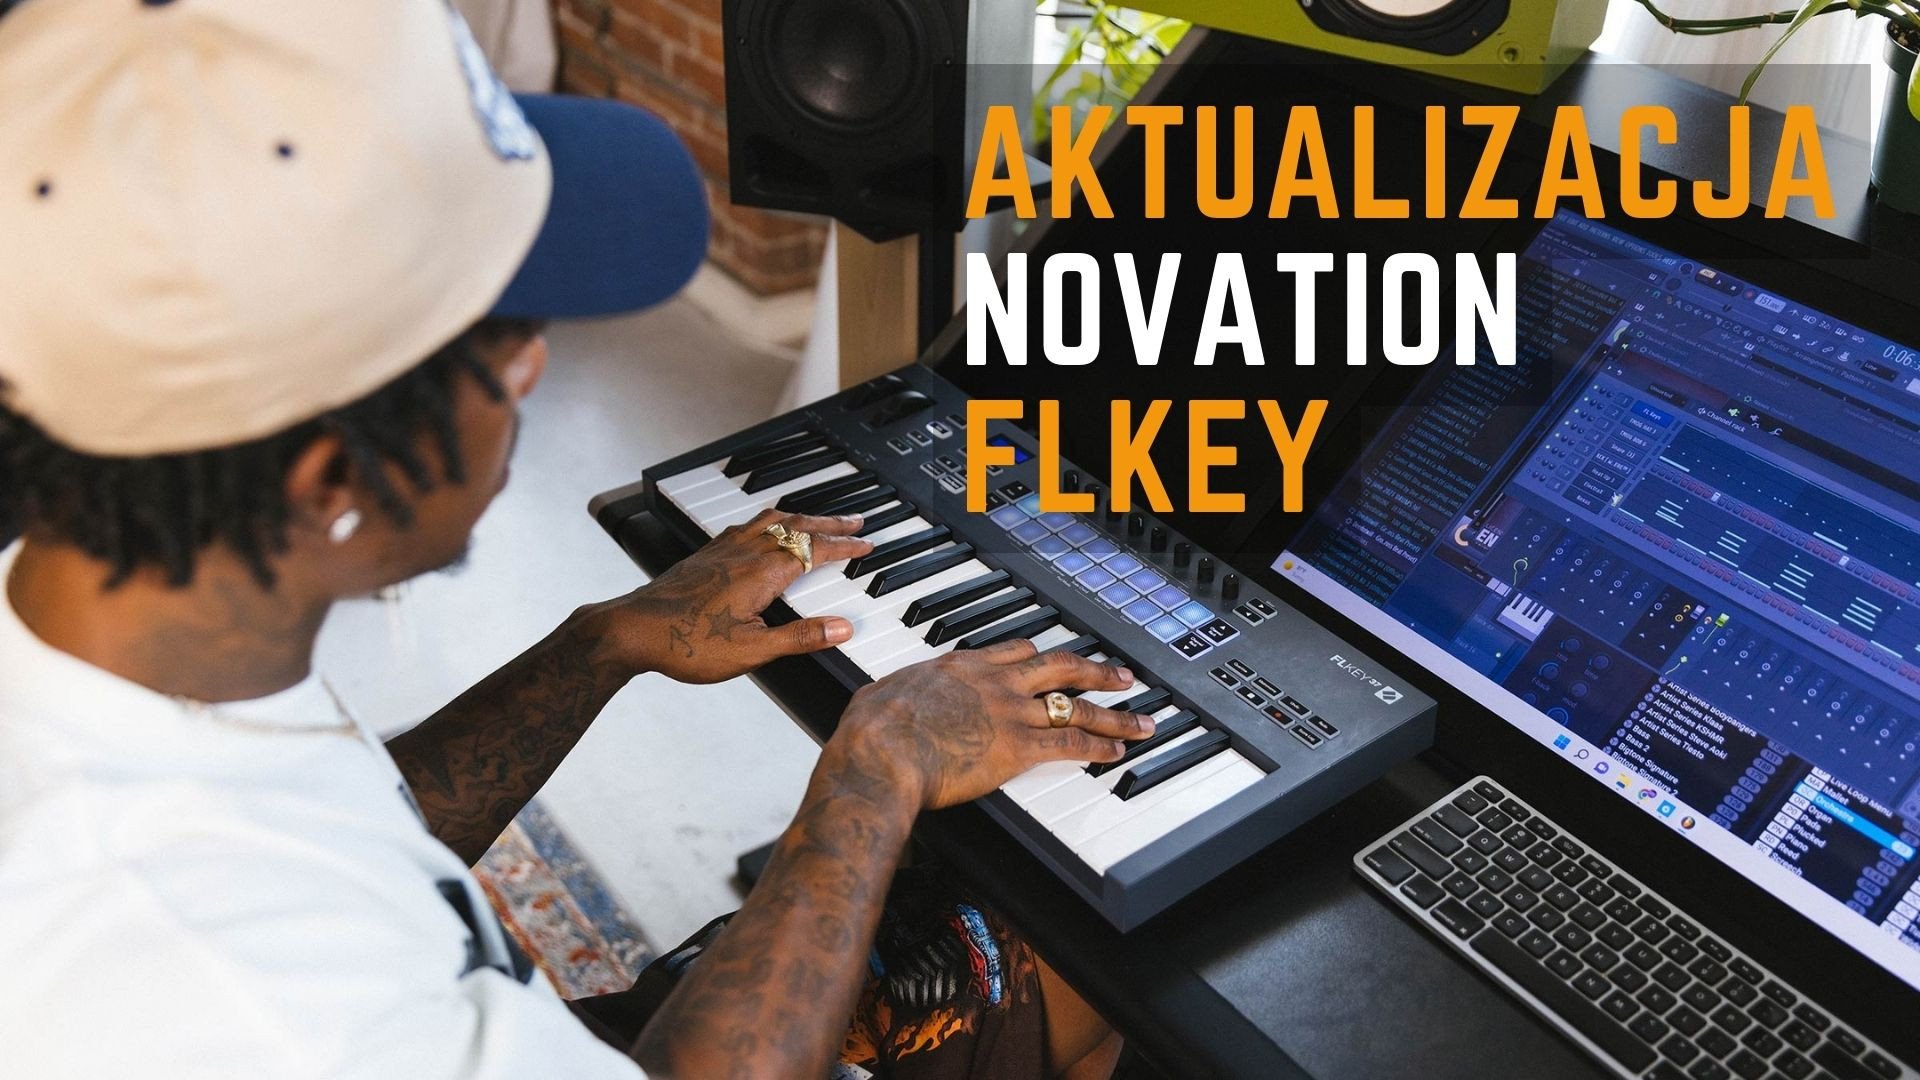 Aktualizacja oprogramowania FLkey od Novation - Wersja 1.2